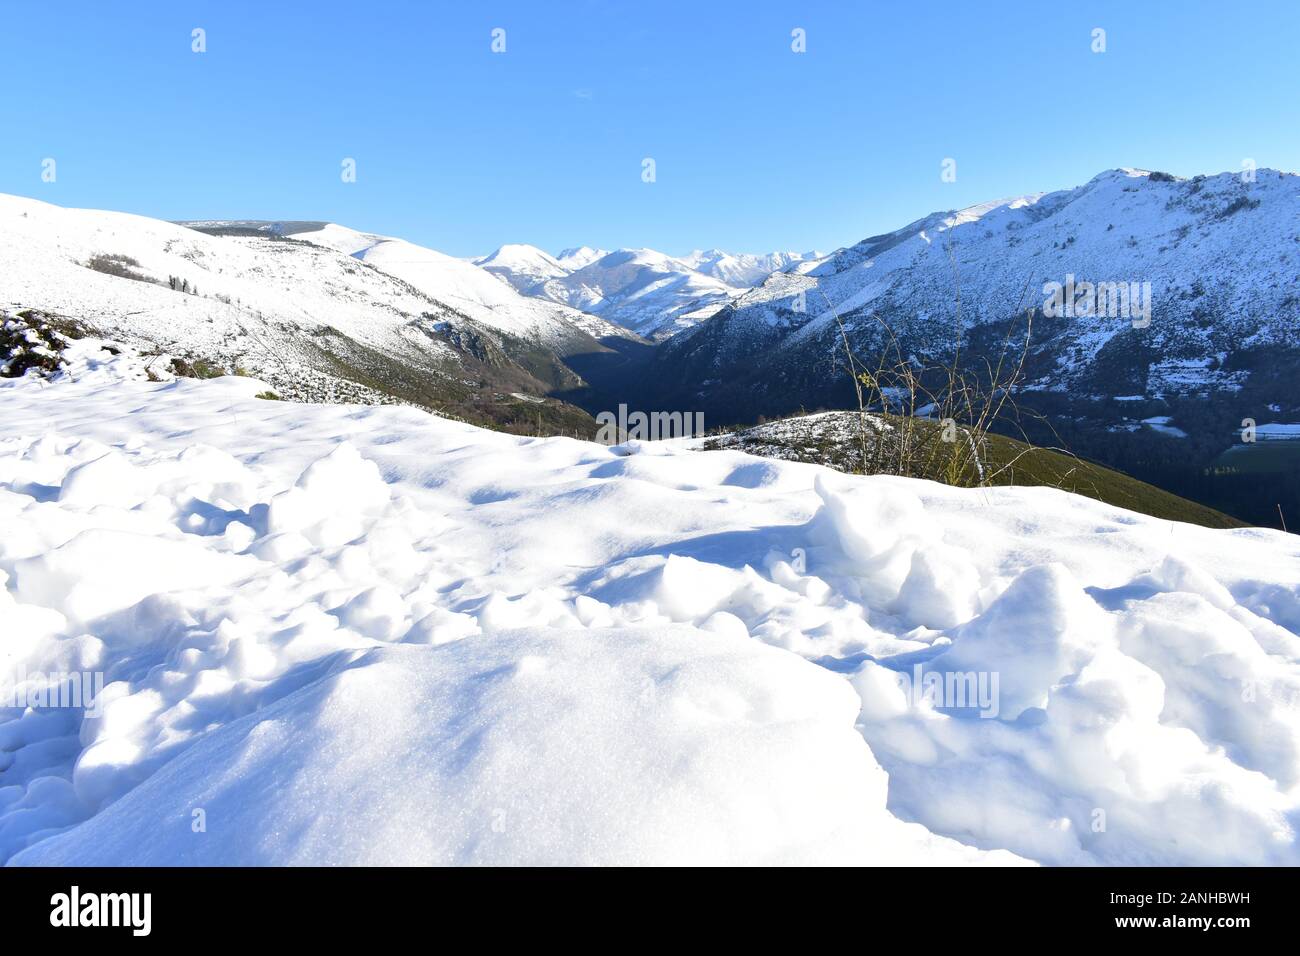 Winterlandschaft mit Schnee bedeckten Bergen und grünen Tal. Blick von einem Spitzenwert von Eis, Schnee und blauer Himmel. Ancares Region, Provinz Lugo, Galizien, Spanien. Stockfoto